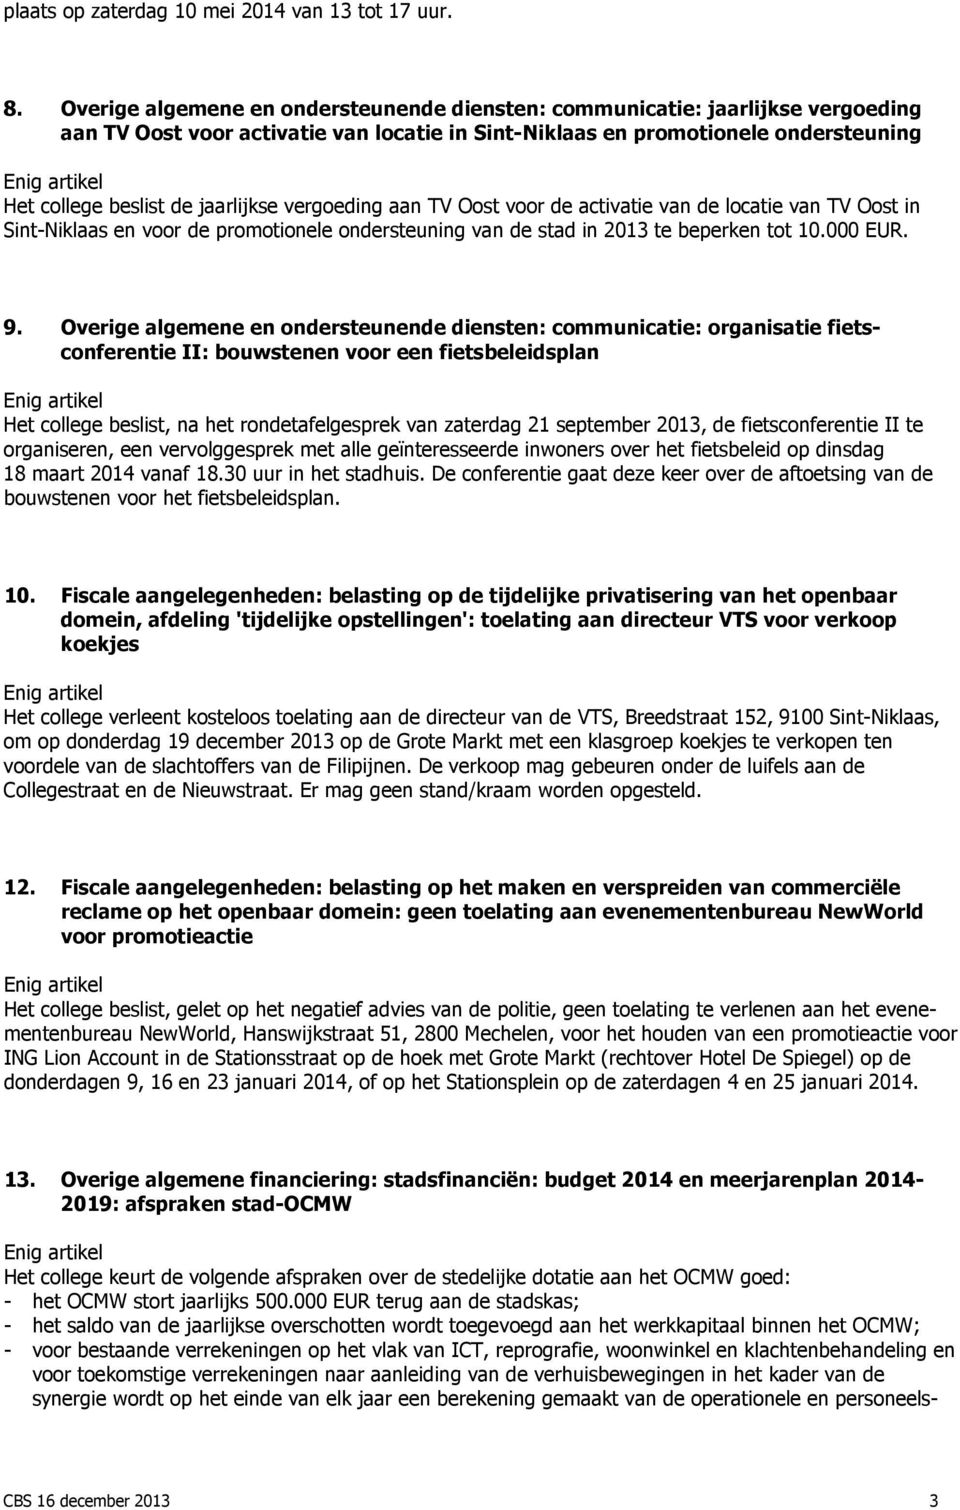 vergoeding aan TV Oost voor de activatie van de locatie van TV Oost in Sint-Niklaas en voor de promotionele ondersteuning van de stad in 2013 te beperken tot 10.000 EUR. 9.